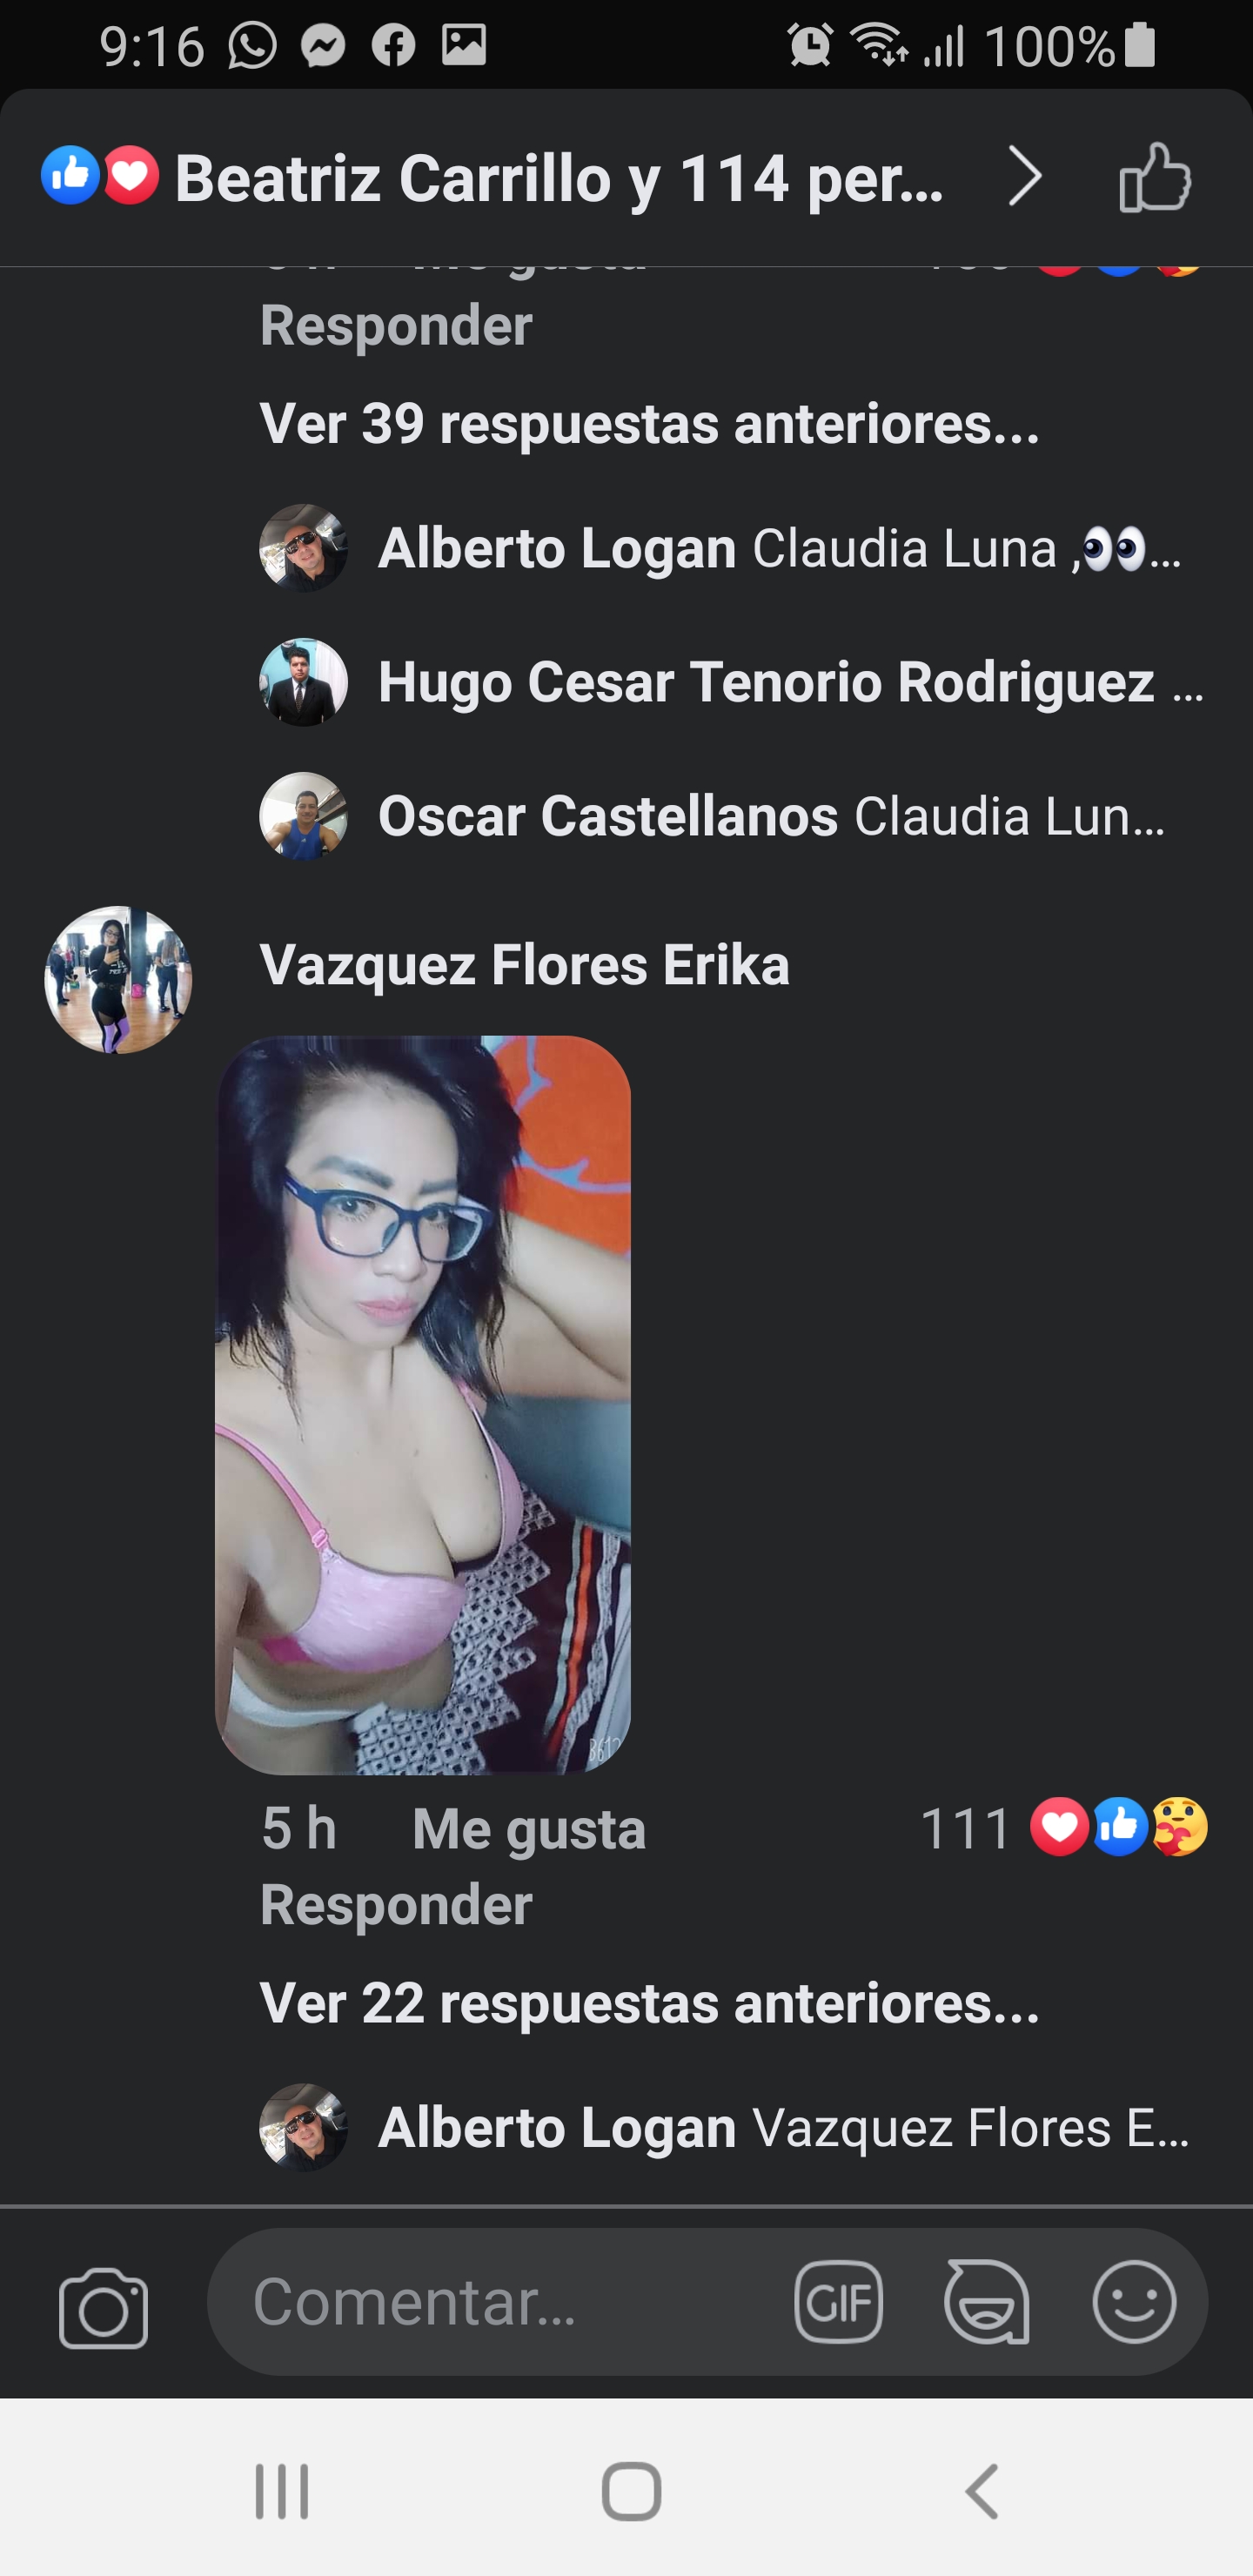 Erika Flores Vázquez